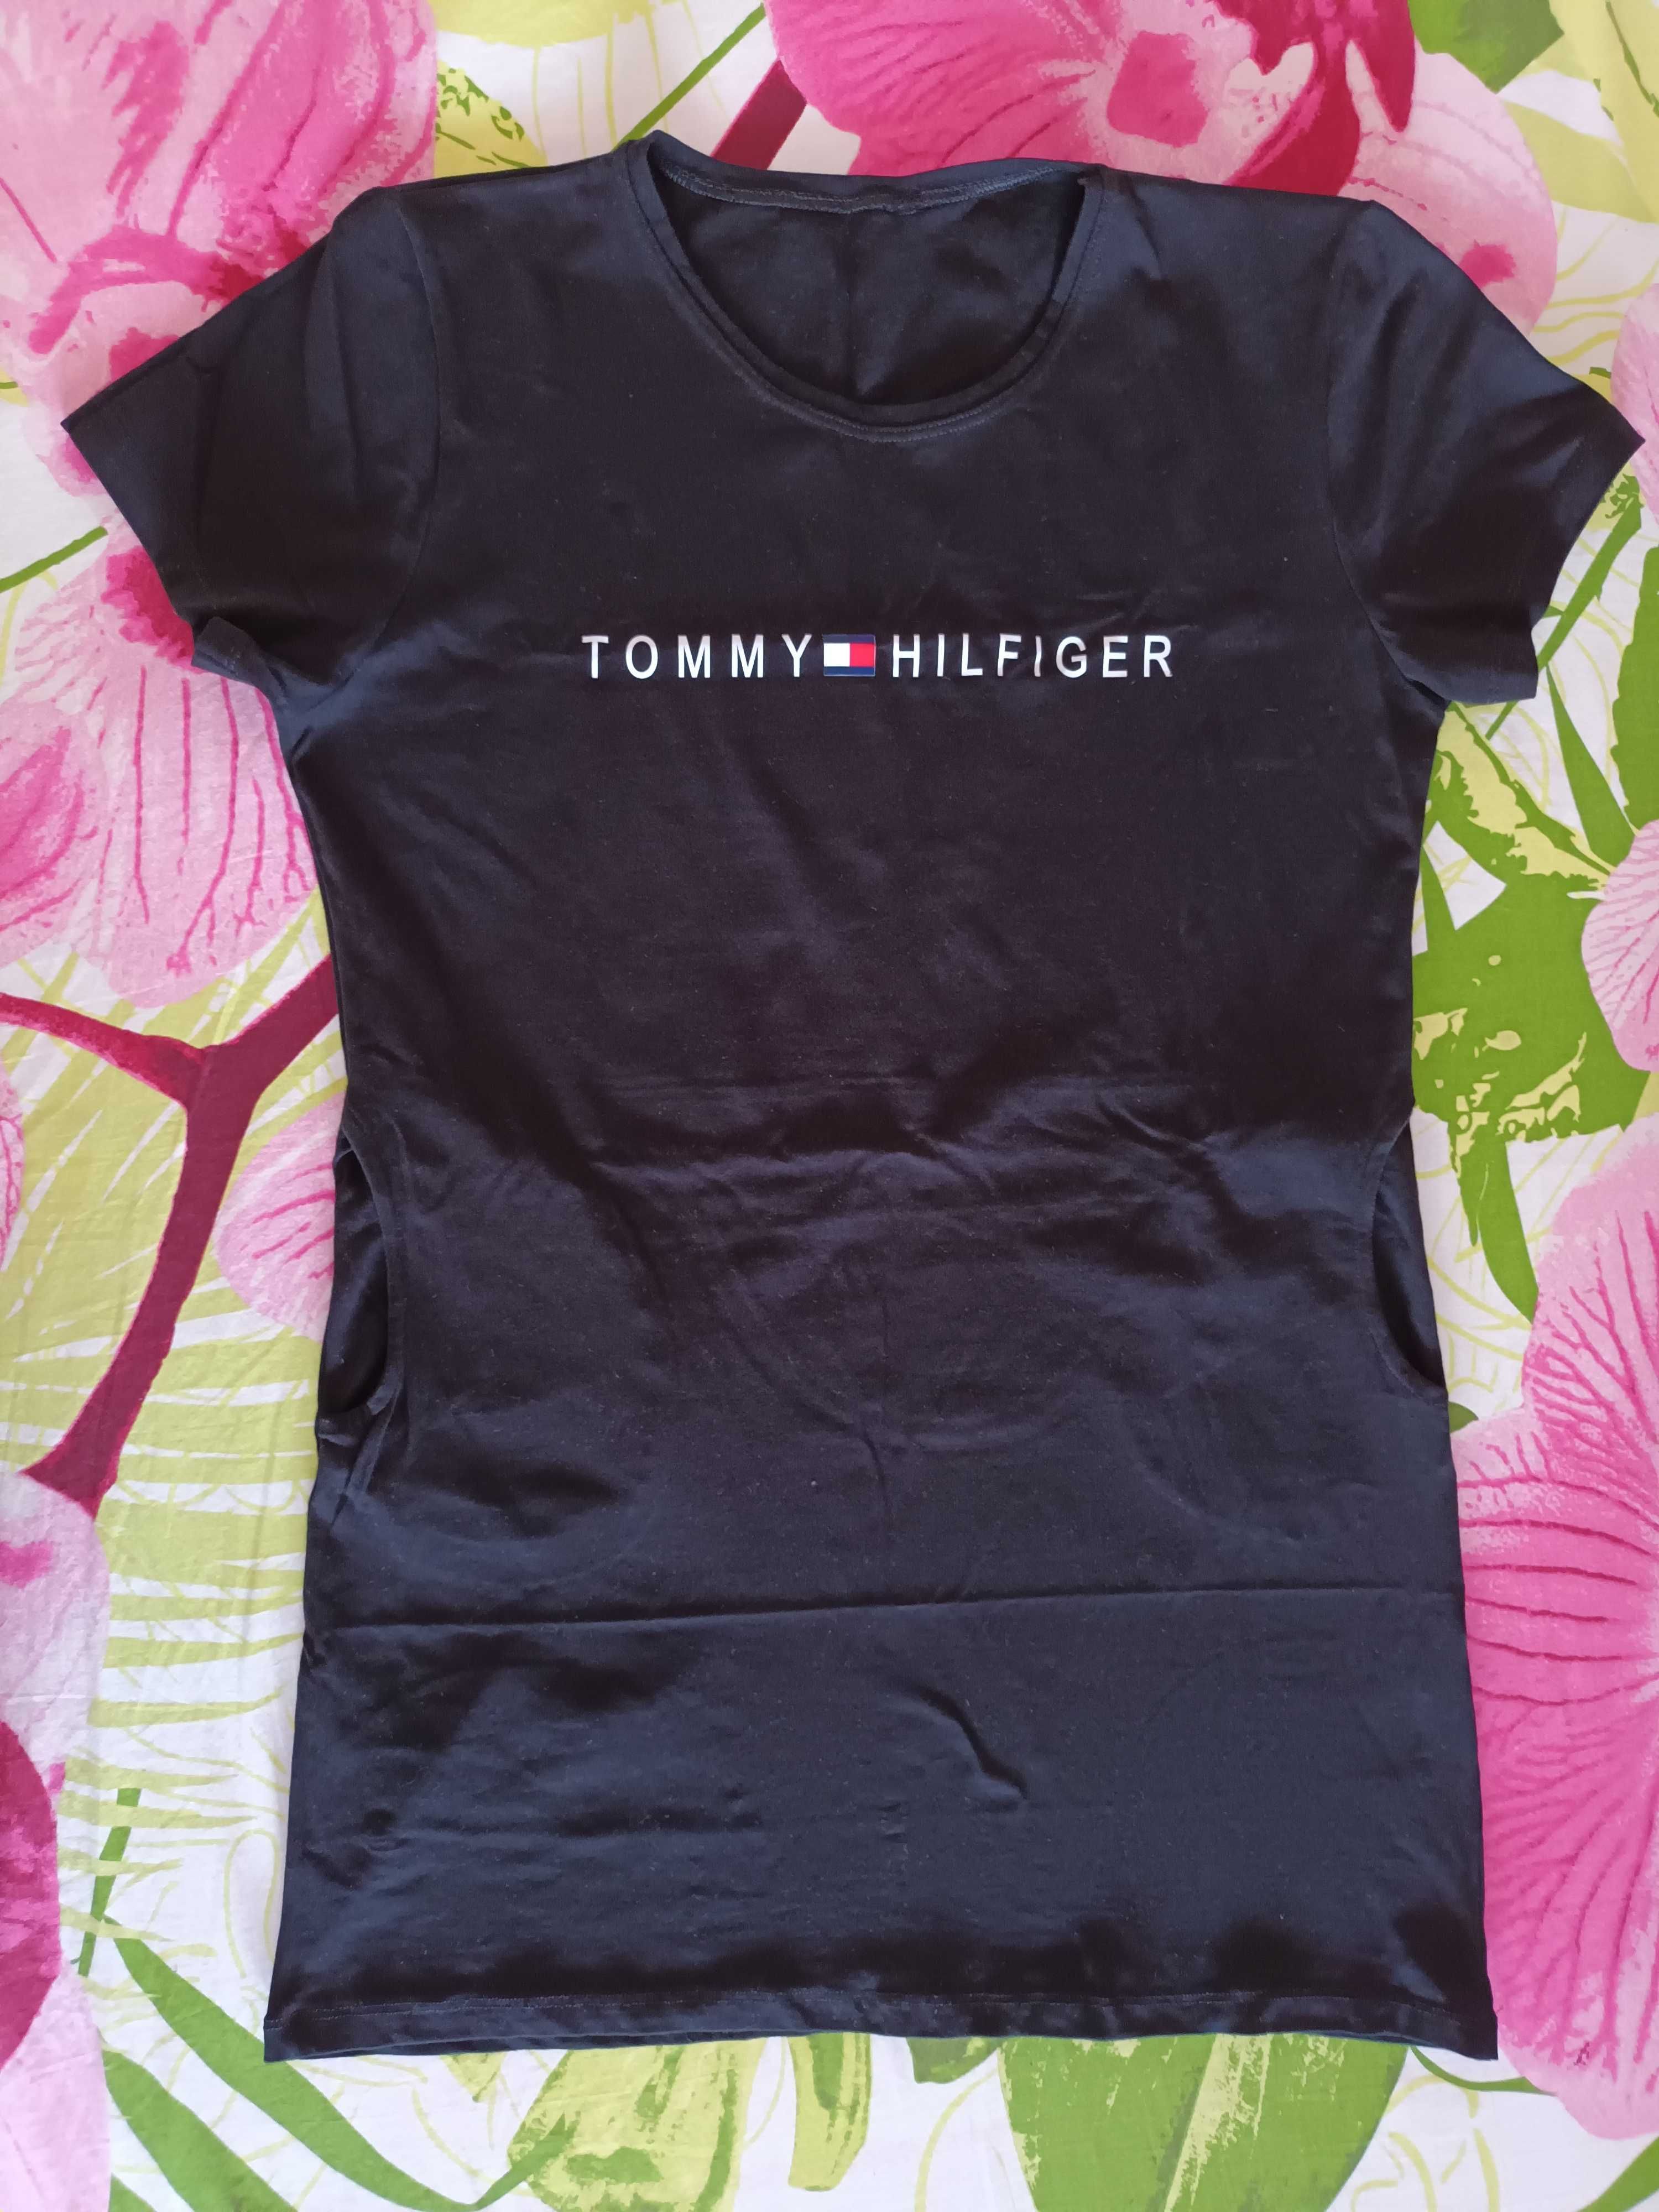 Nowa sukienka tunika M/L z napisem Tommy Hilfiger czarna, bawełna